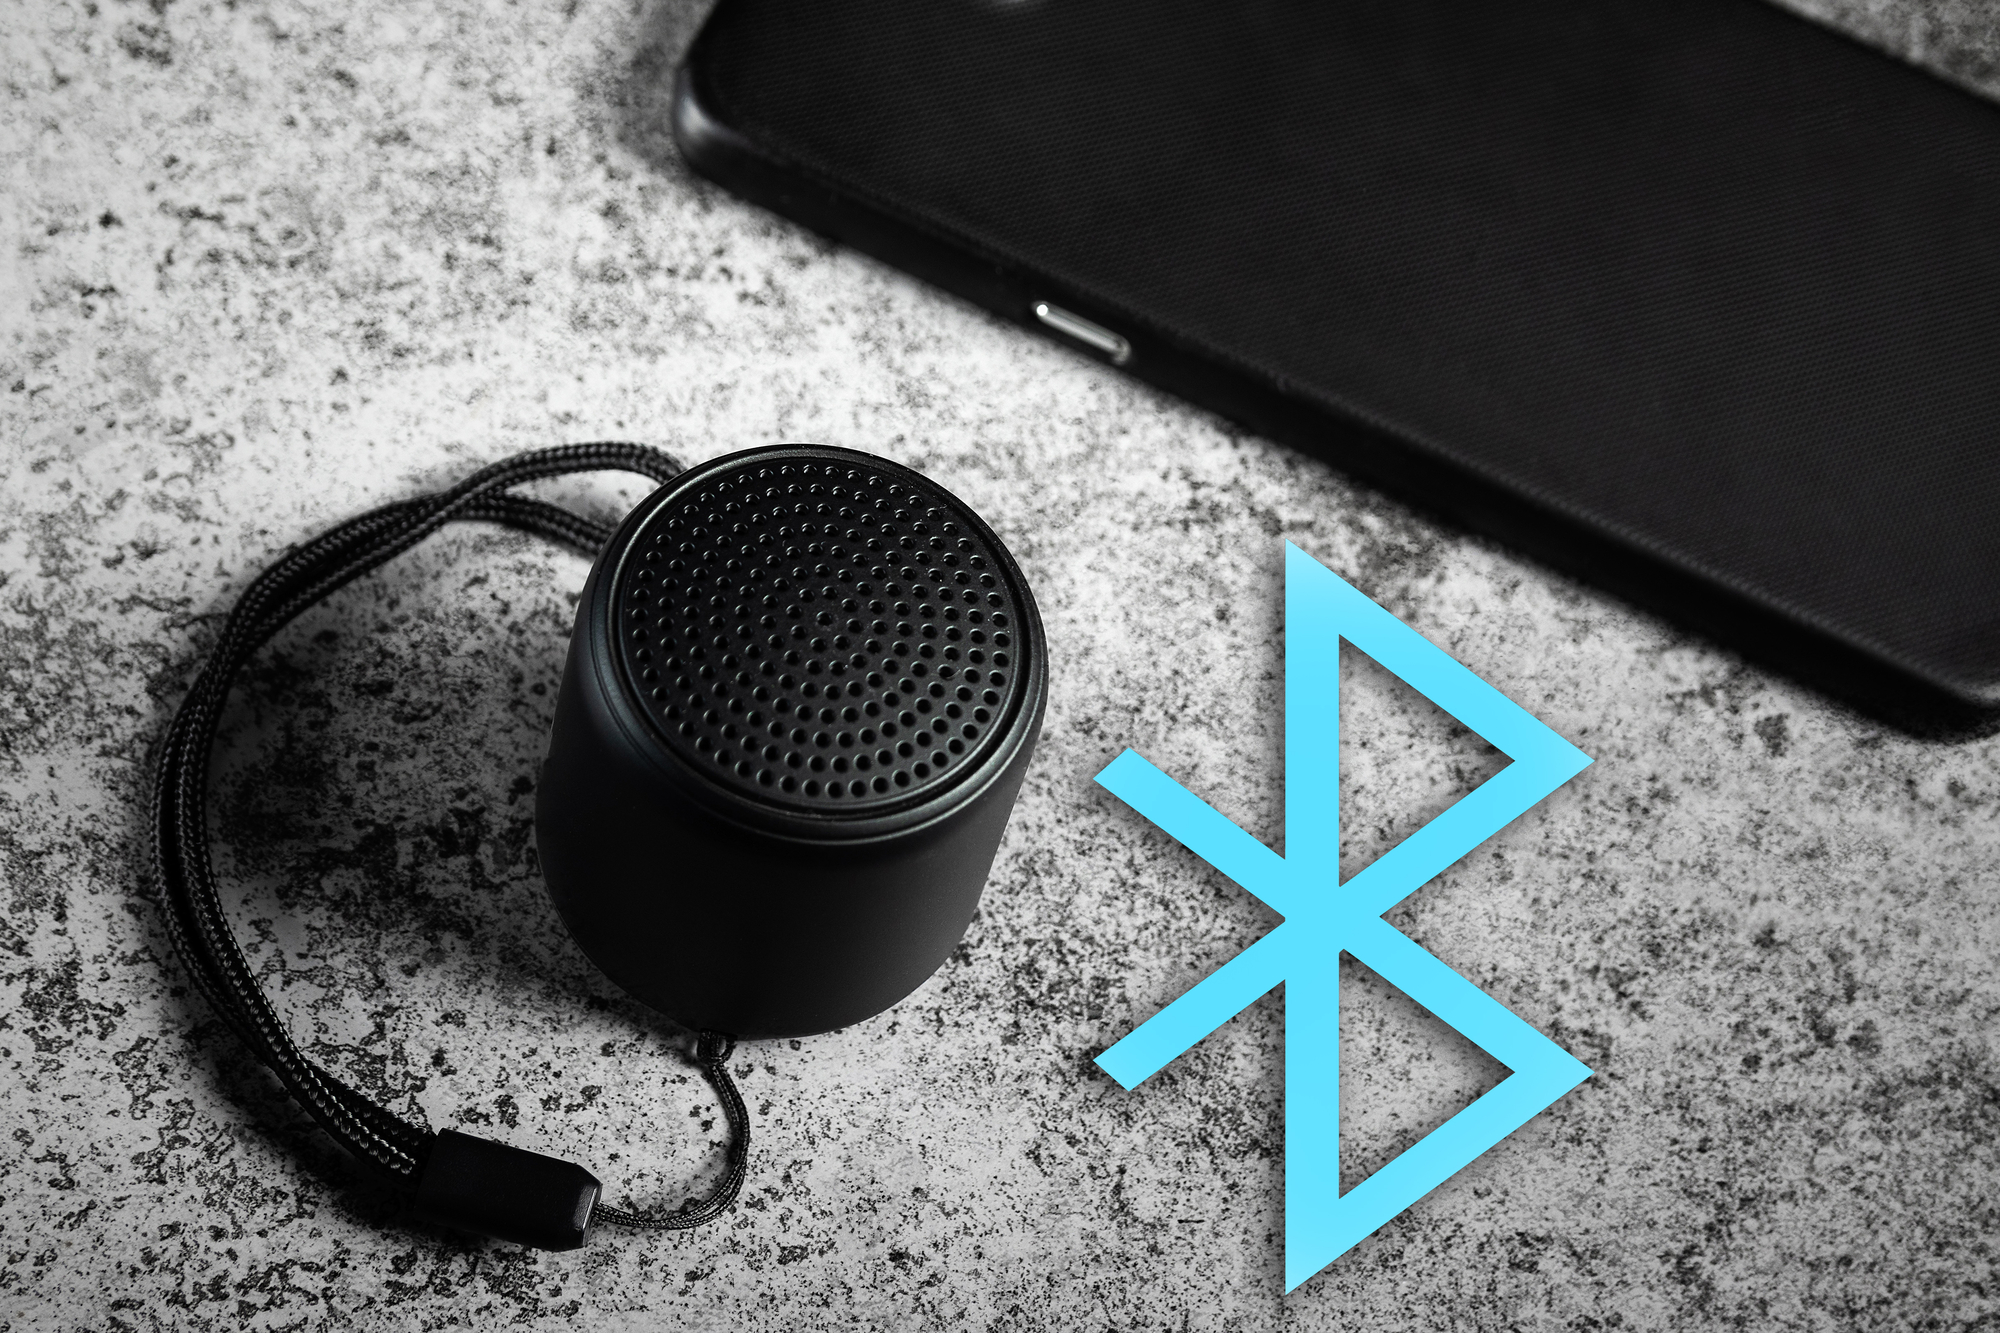 Bluetooth-based speaker